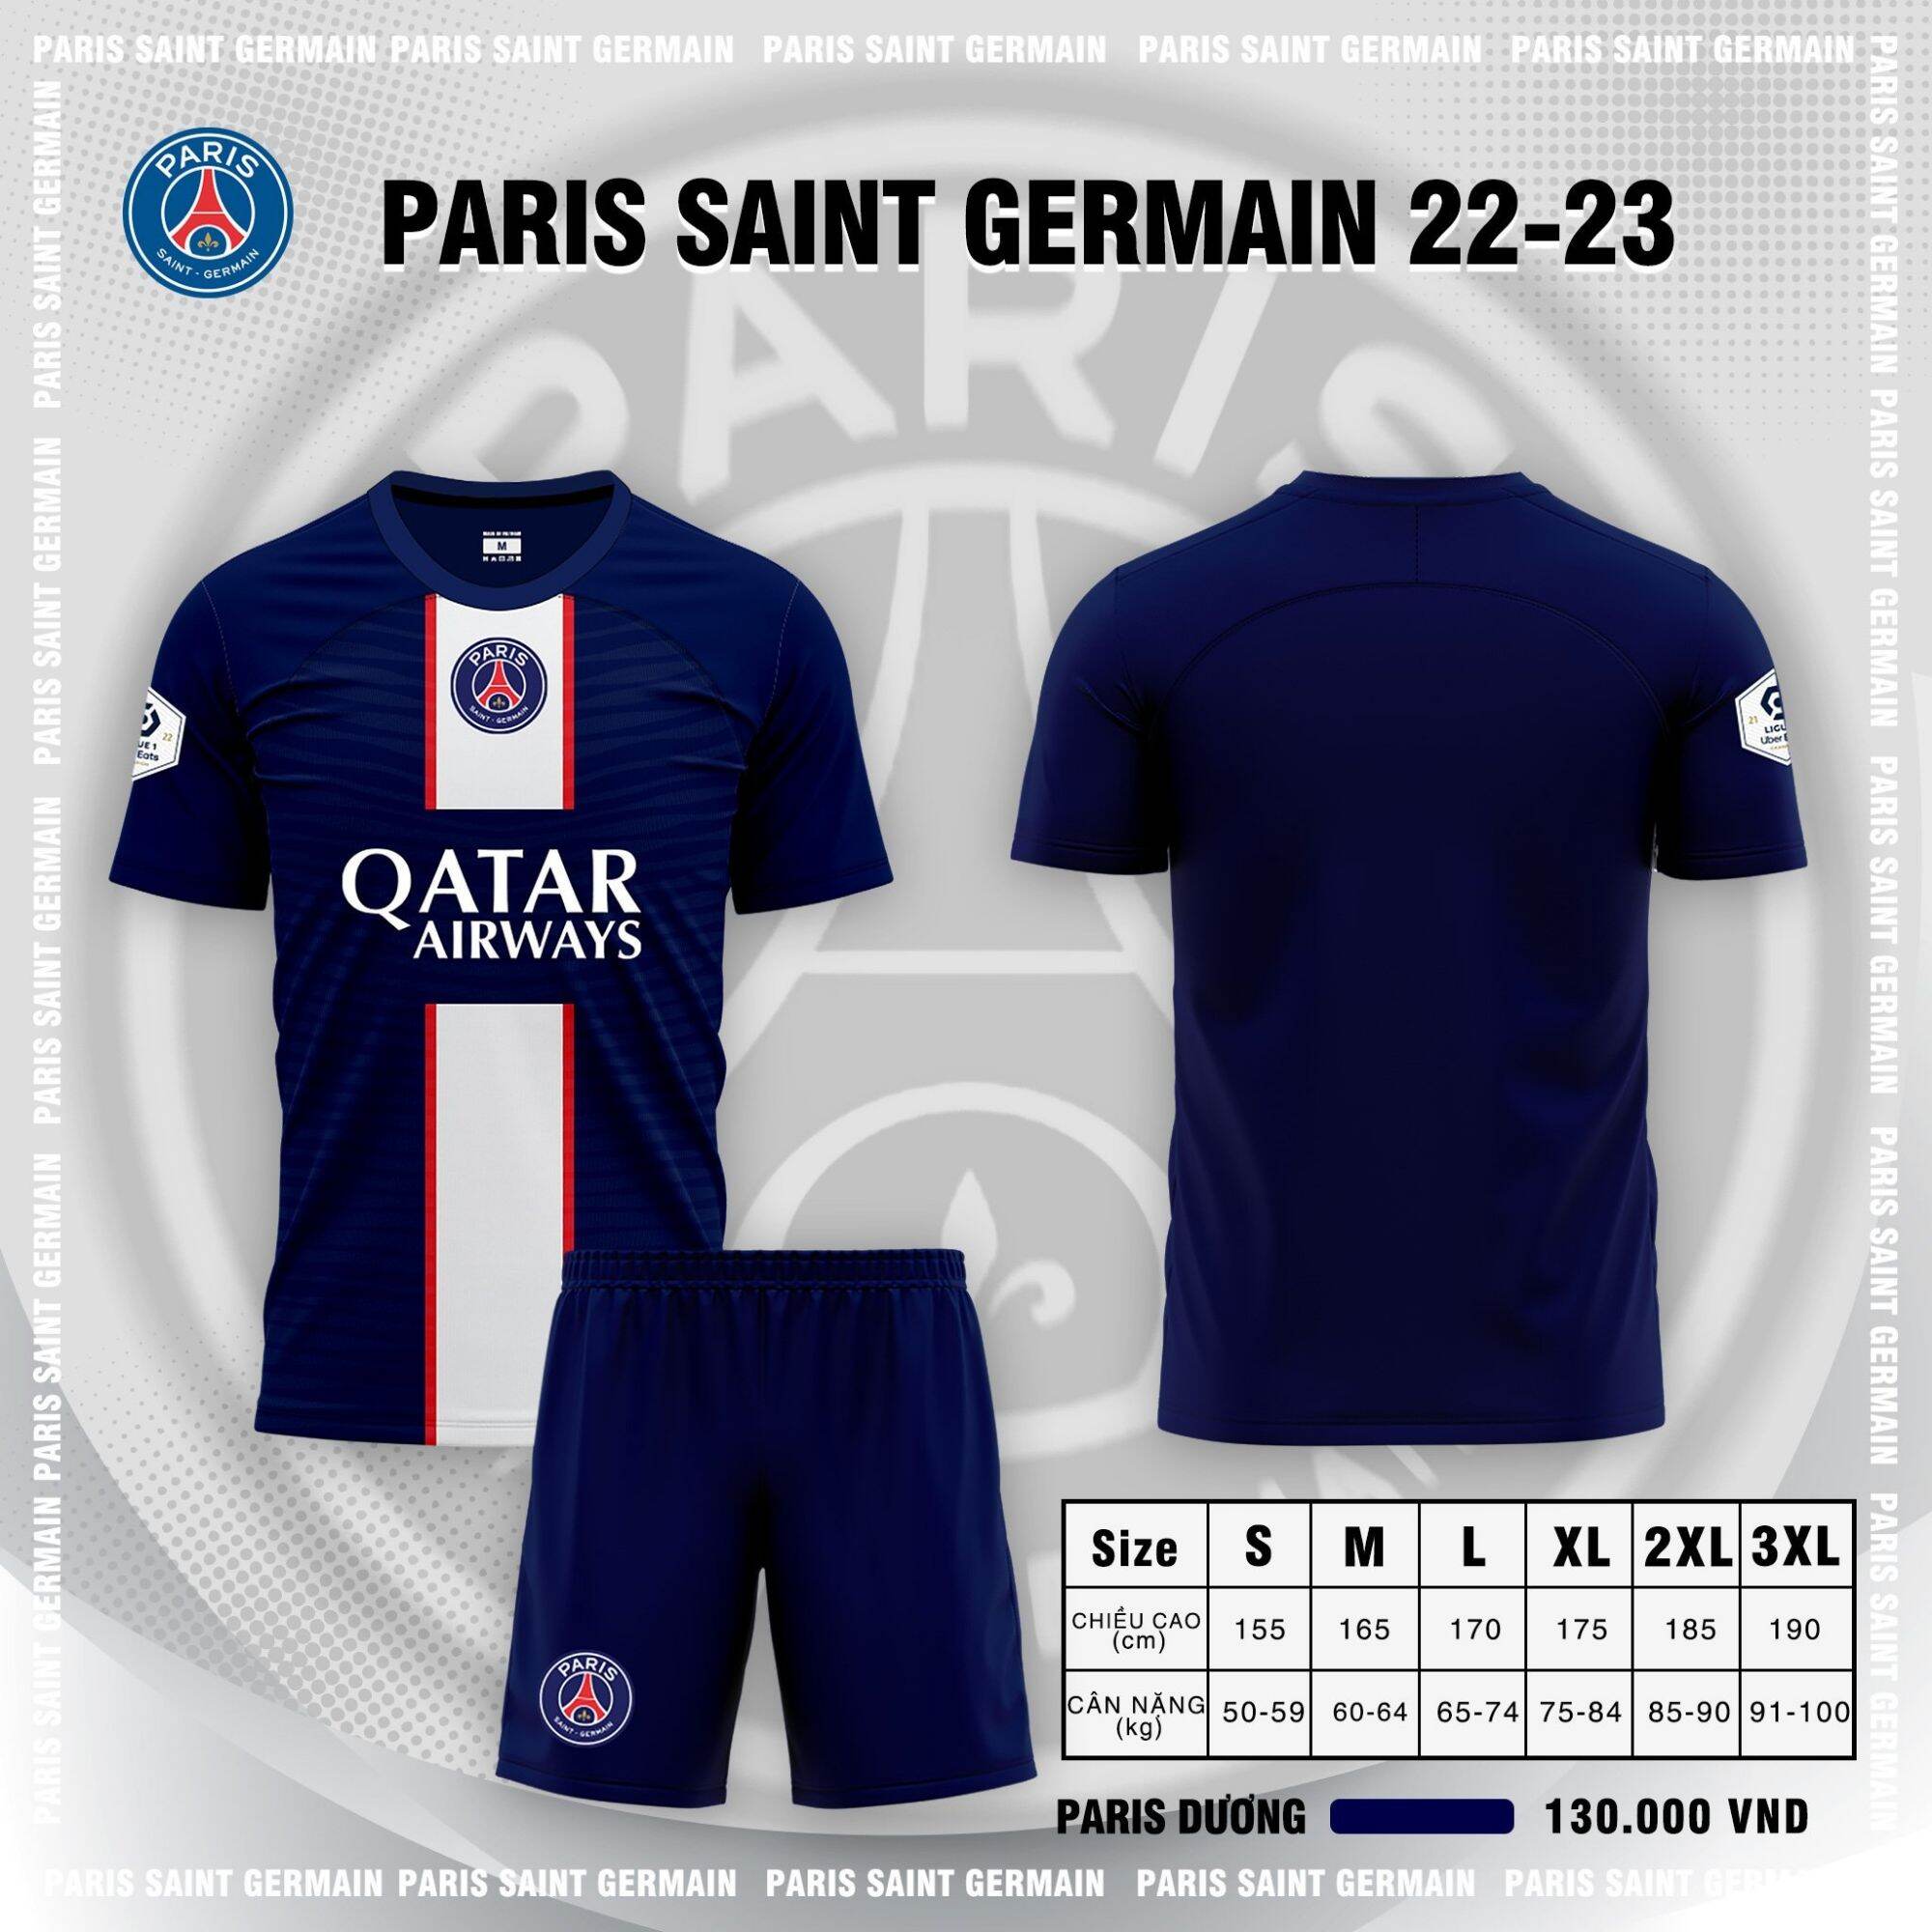 Quần áo bóng đá câu lạc bộ PARI DƯƠNG 2022 2023 PSG sân nhà  ibox để đặt